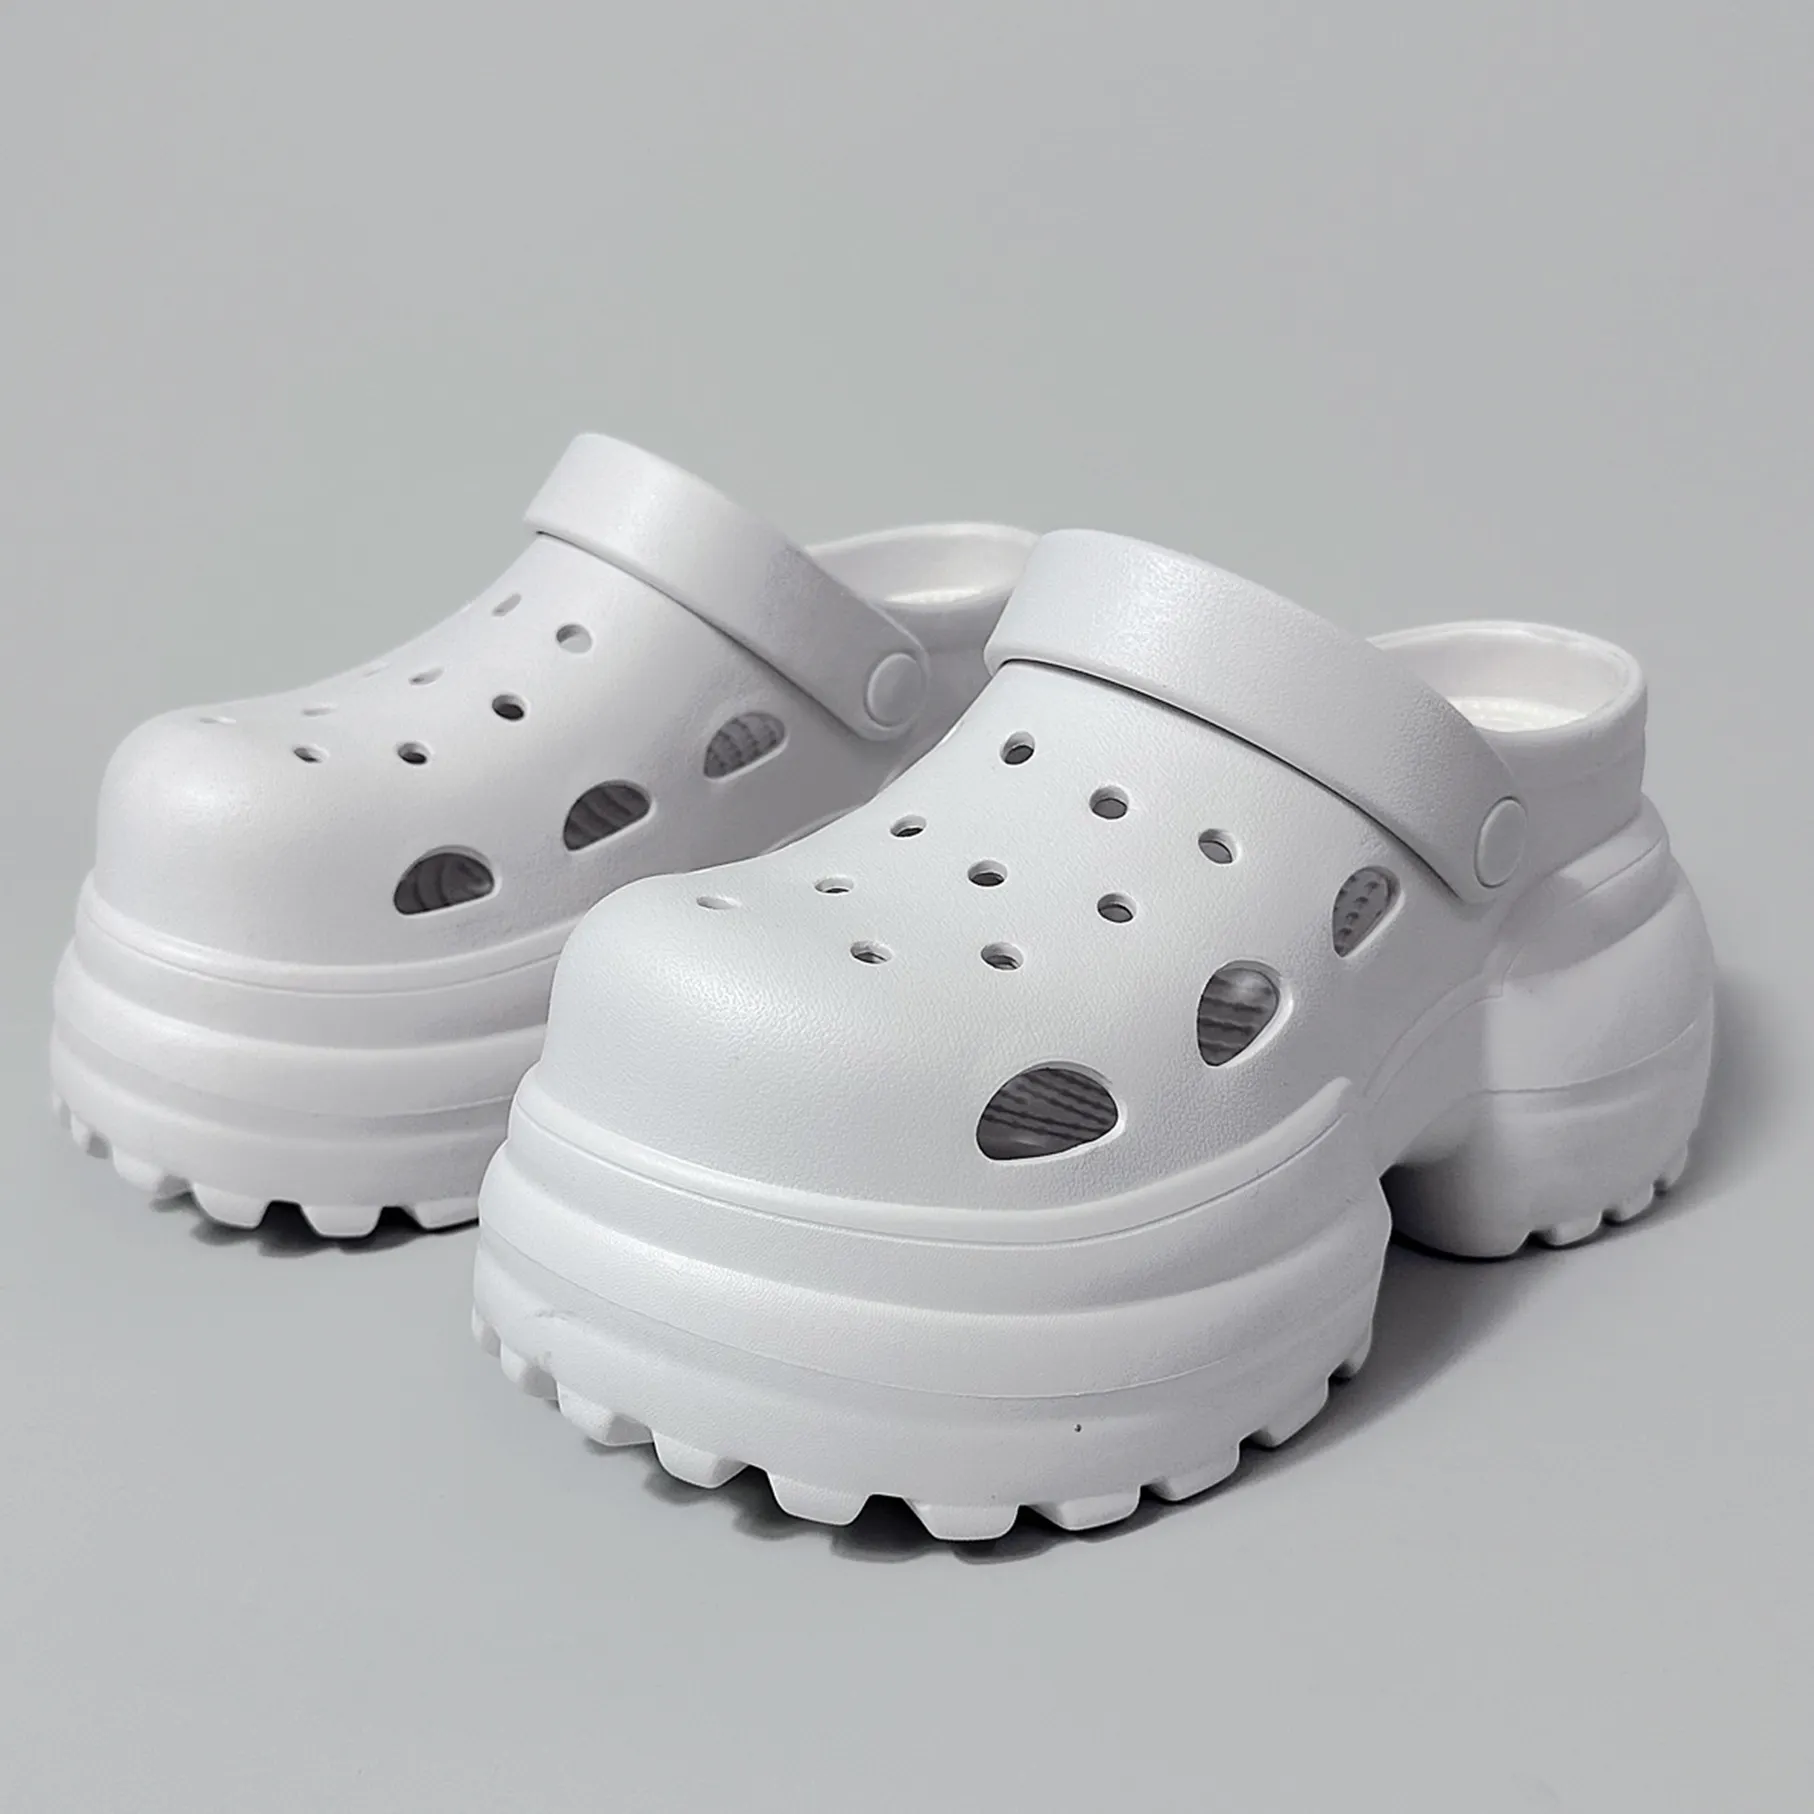 ออกแบบใหม่ผู้หญิงรองเท้าแตะสไลด์ฤดูร้อนผู้หญิงชายหาดรองเท้าสไลด์ EVA หลากสีอุดตันกับรองเท้าส้นสูงผู้หญิงรองเท้าแตะแพลตฟอร์ม